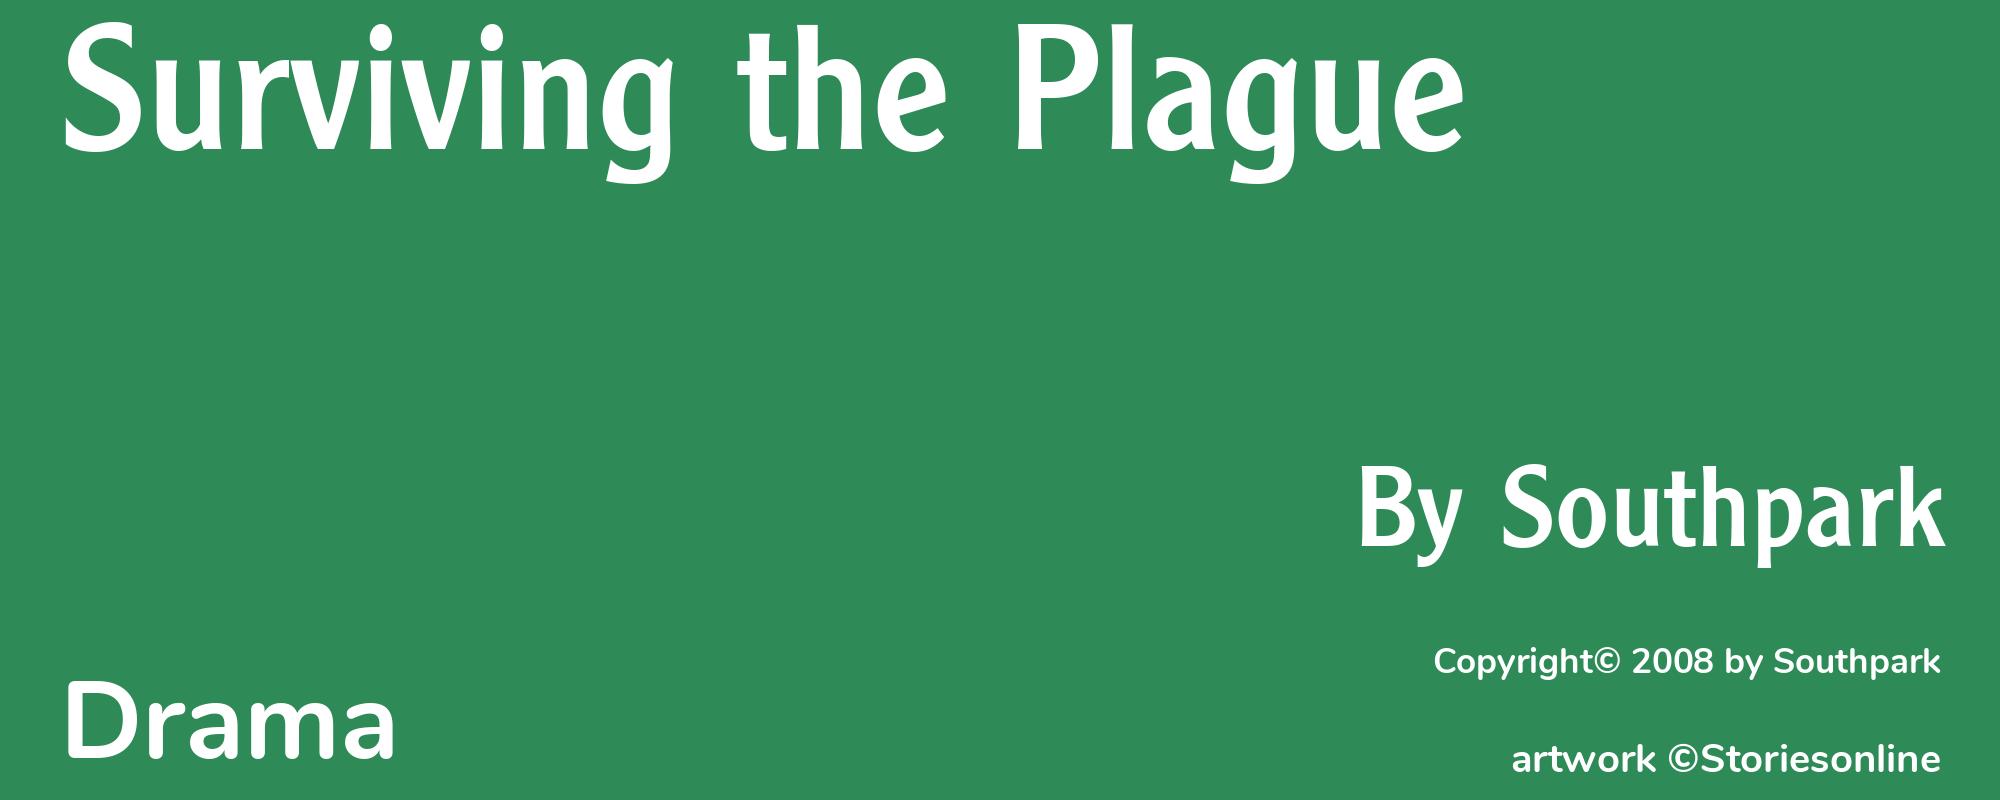 Surviving the Plague - Cover